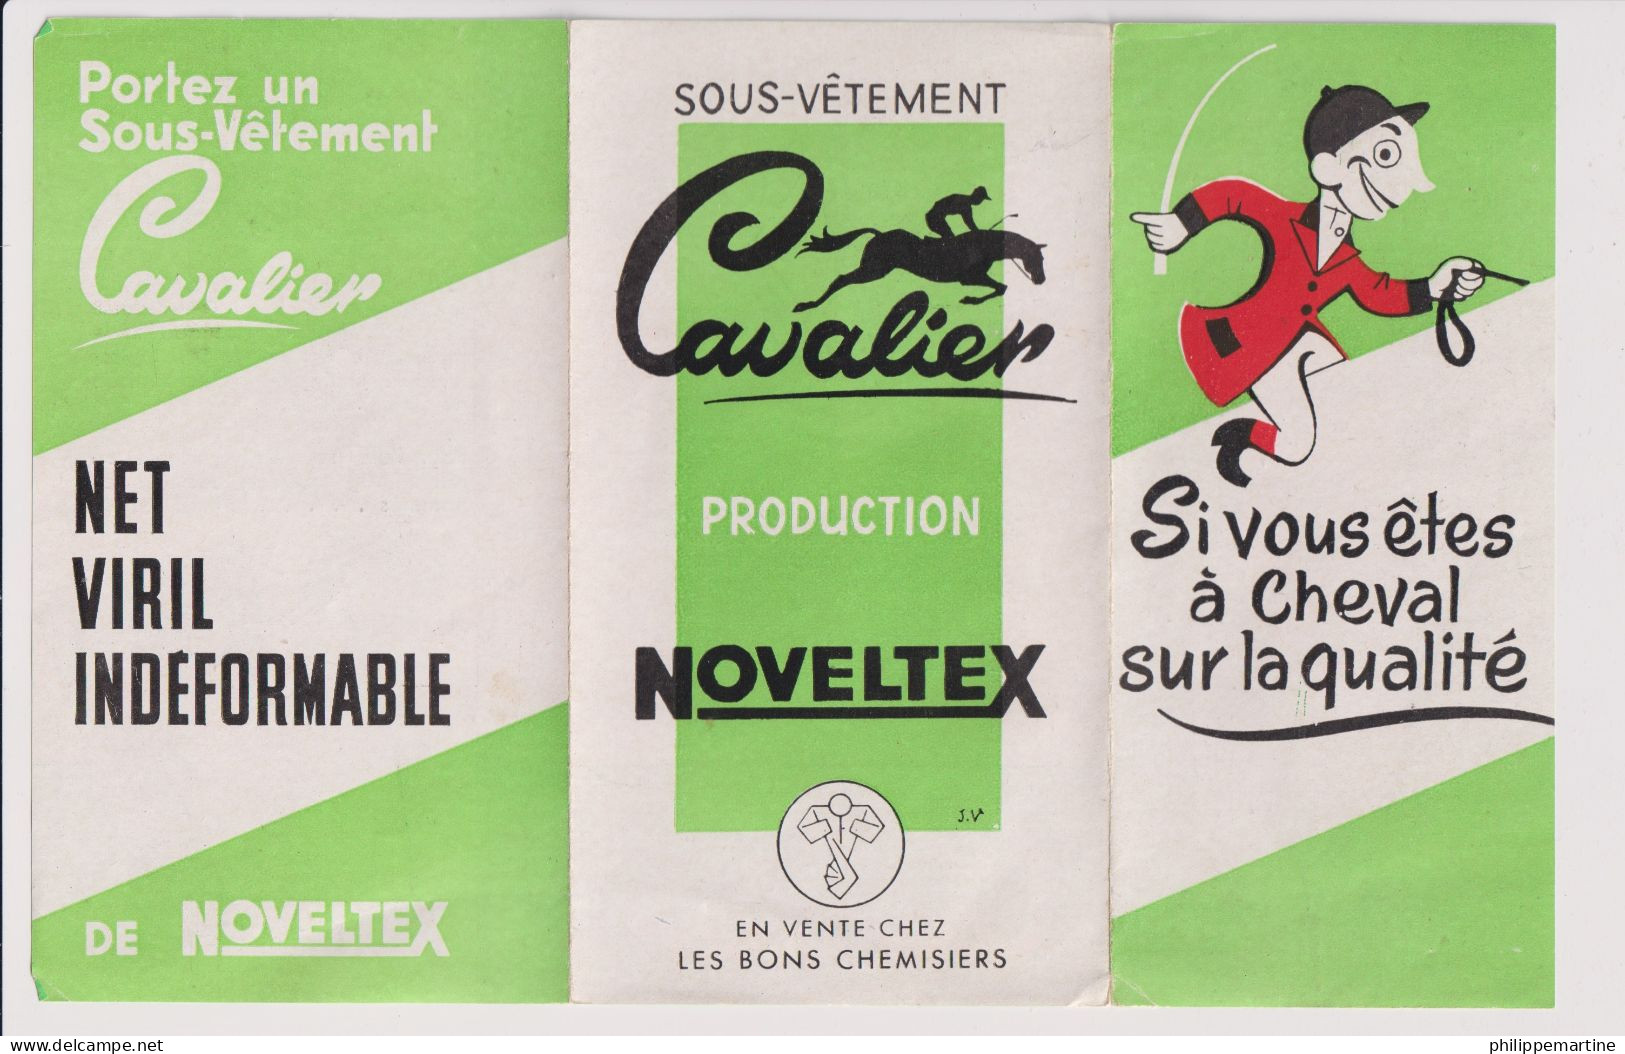 Dépliant Sous-vêtement Cavalier - Production Noveltex - Publicidad